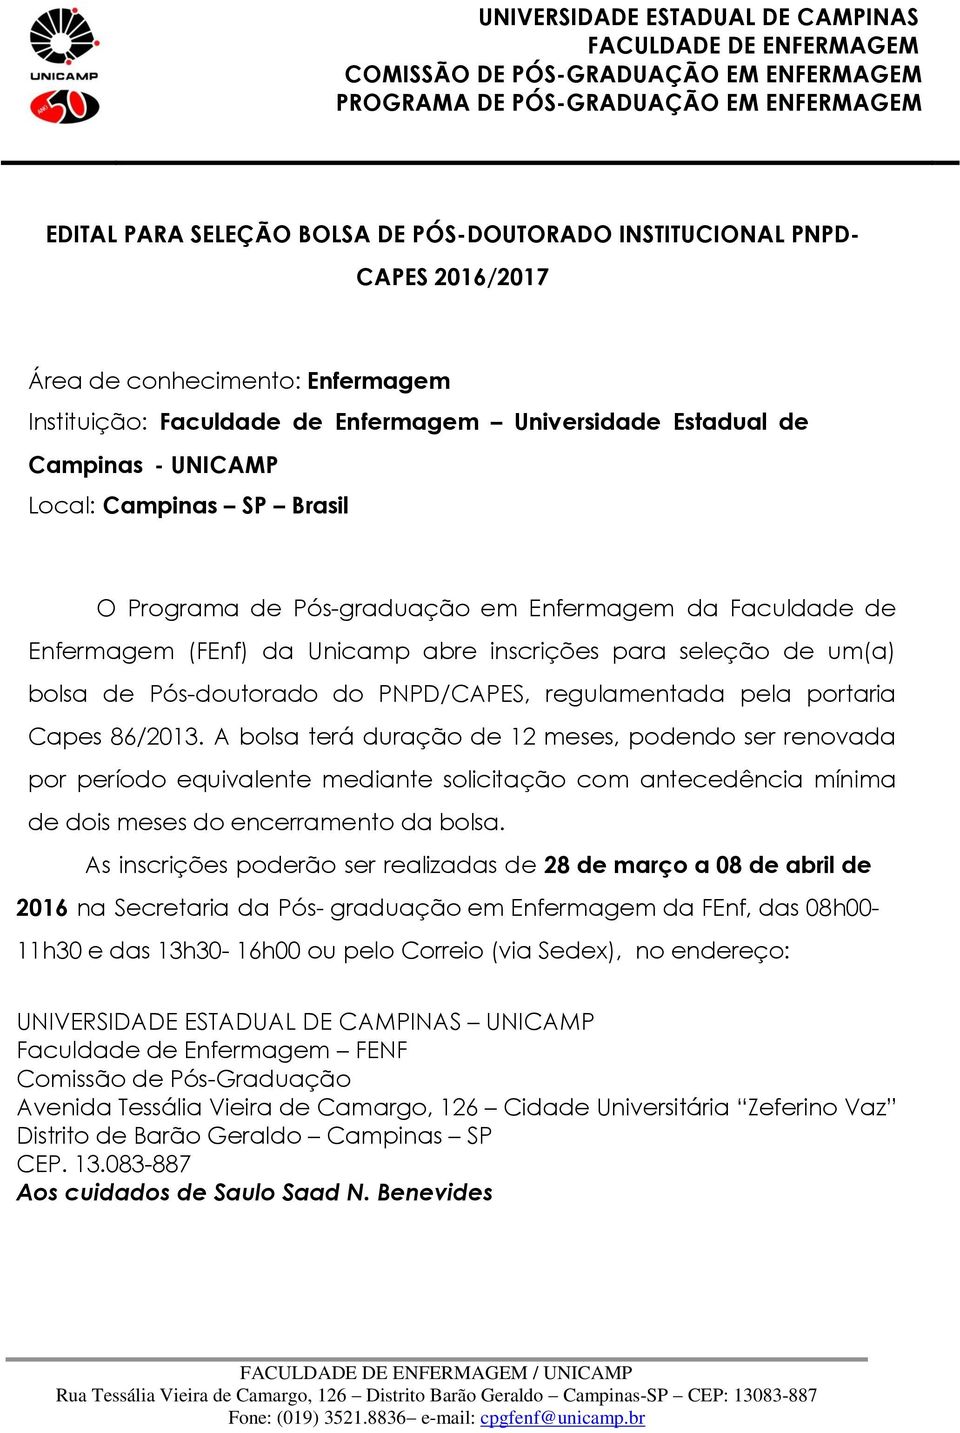 Enfermagem da Faculdade de Enfermagem (FEnf) da Unicamp abre inscrições para seleção de um(a) bolsa de Pós-doutorado do PNPD/CAPES, regulamentada pela portaria Capes 86/2013.